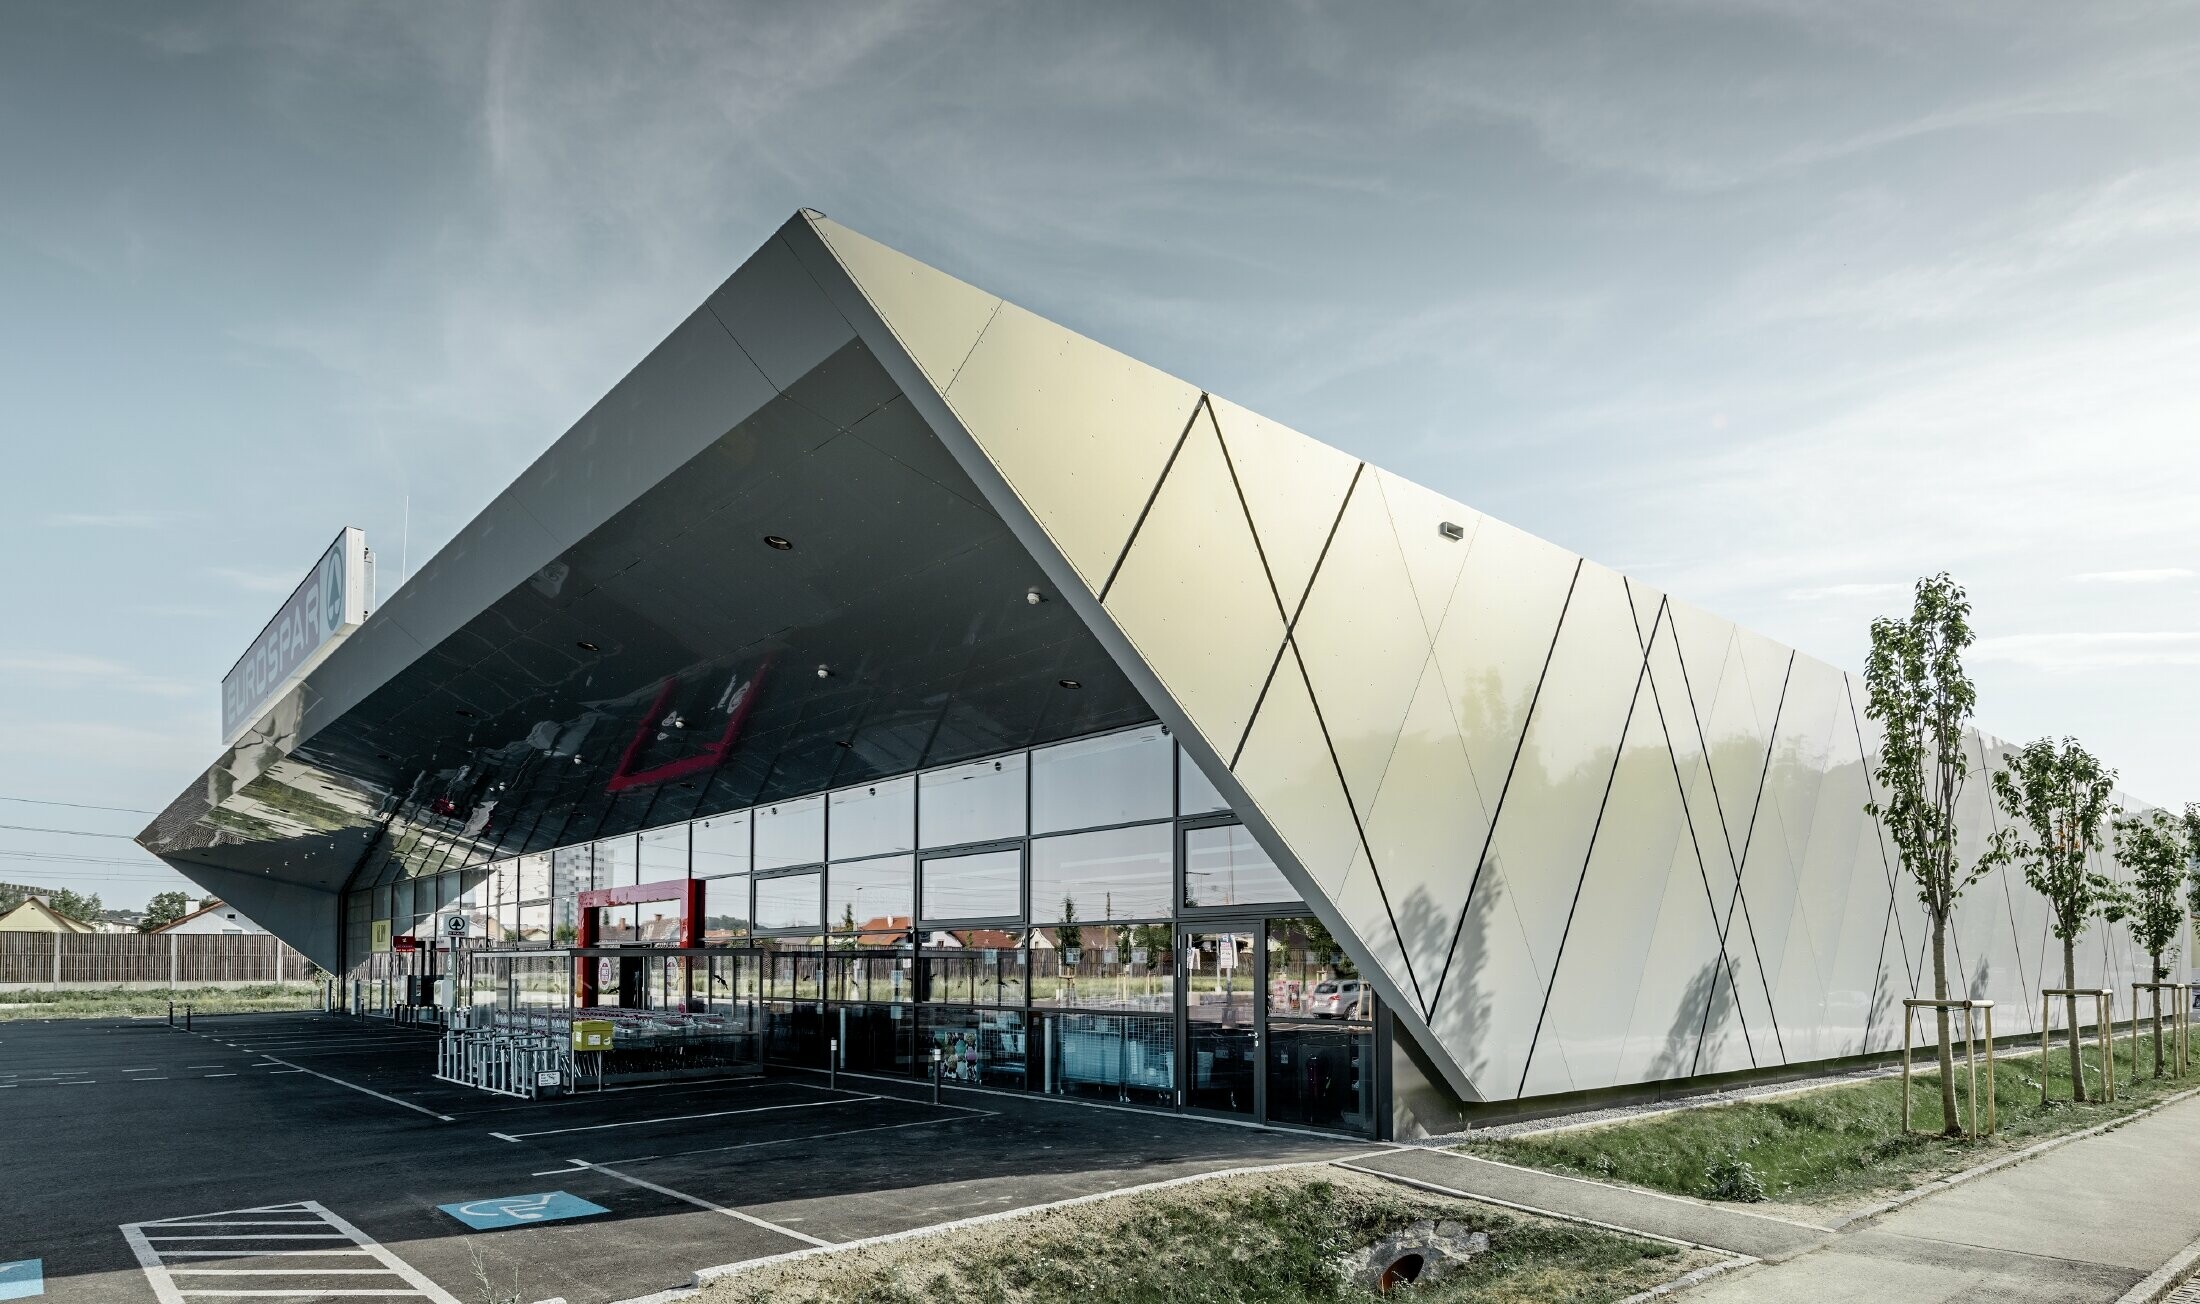 Ingången till den nya Eurospar filialen i Wels med den moderna fasadpanelen från PREFA i silverguld. Fasaden av aluminiumkomposit skimrar i solen i varierande färger beroende på betraktningsvinkeln.